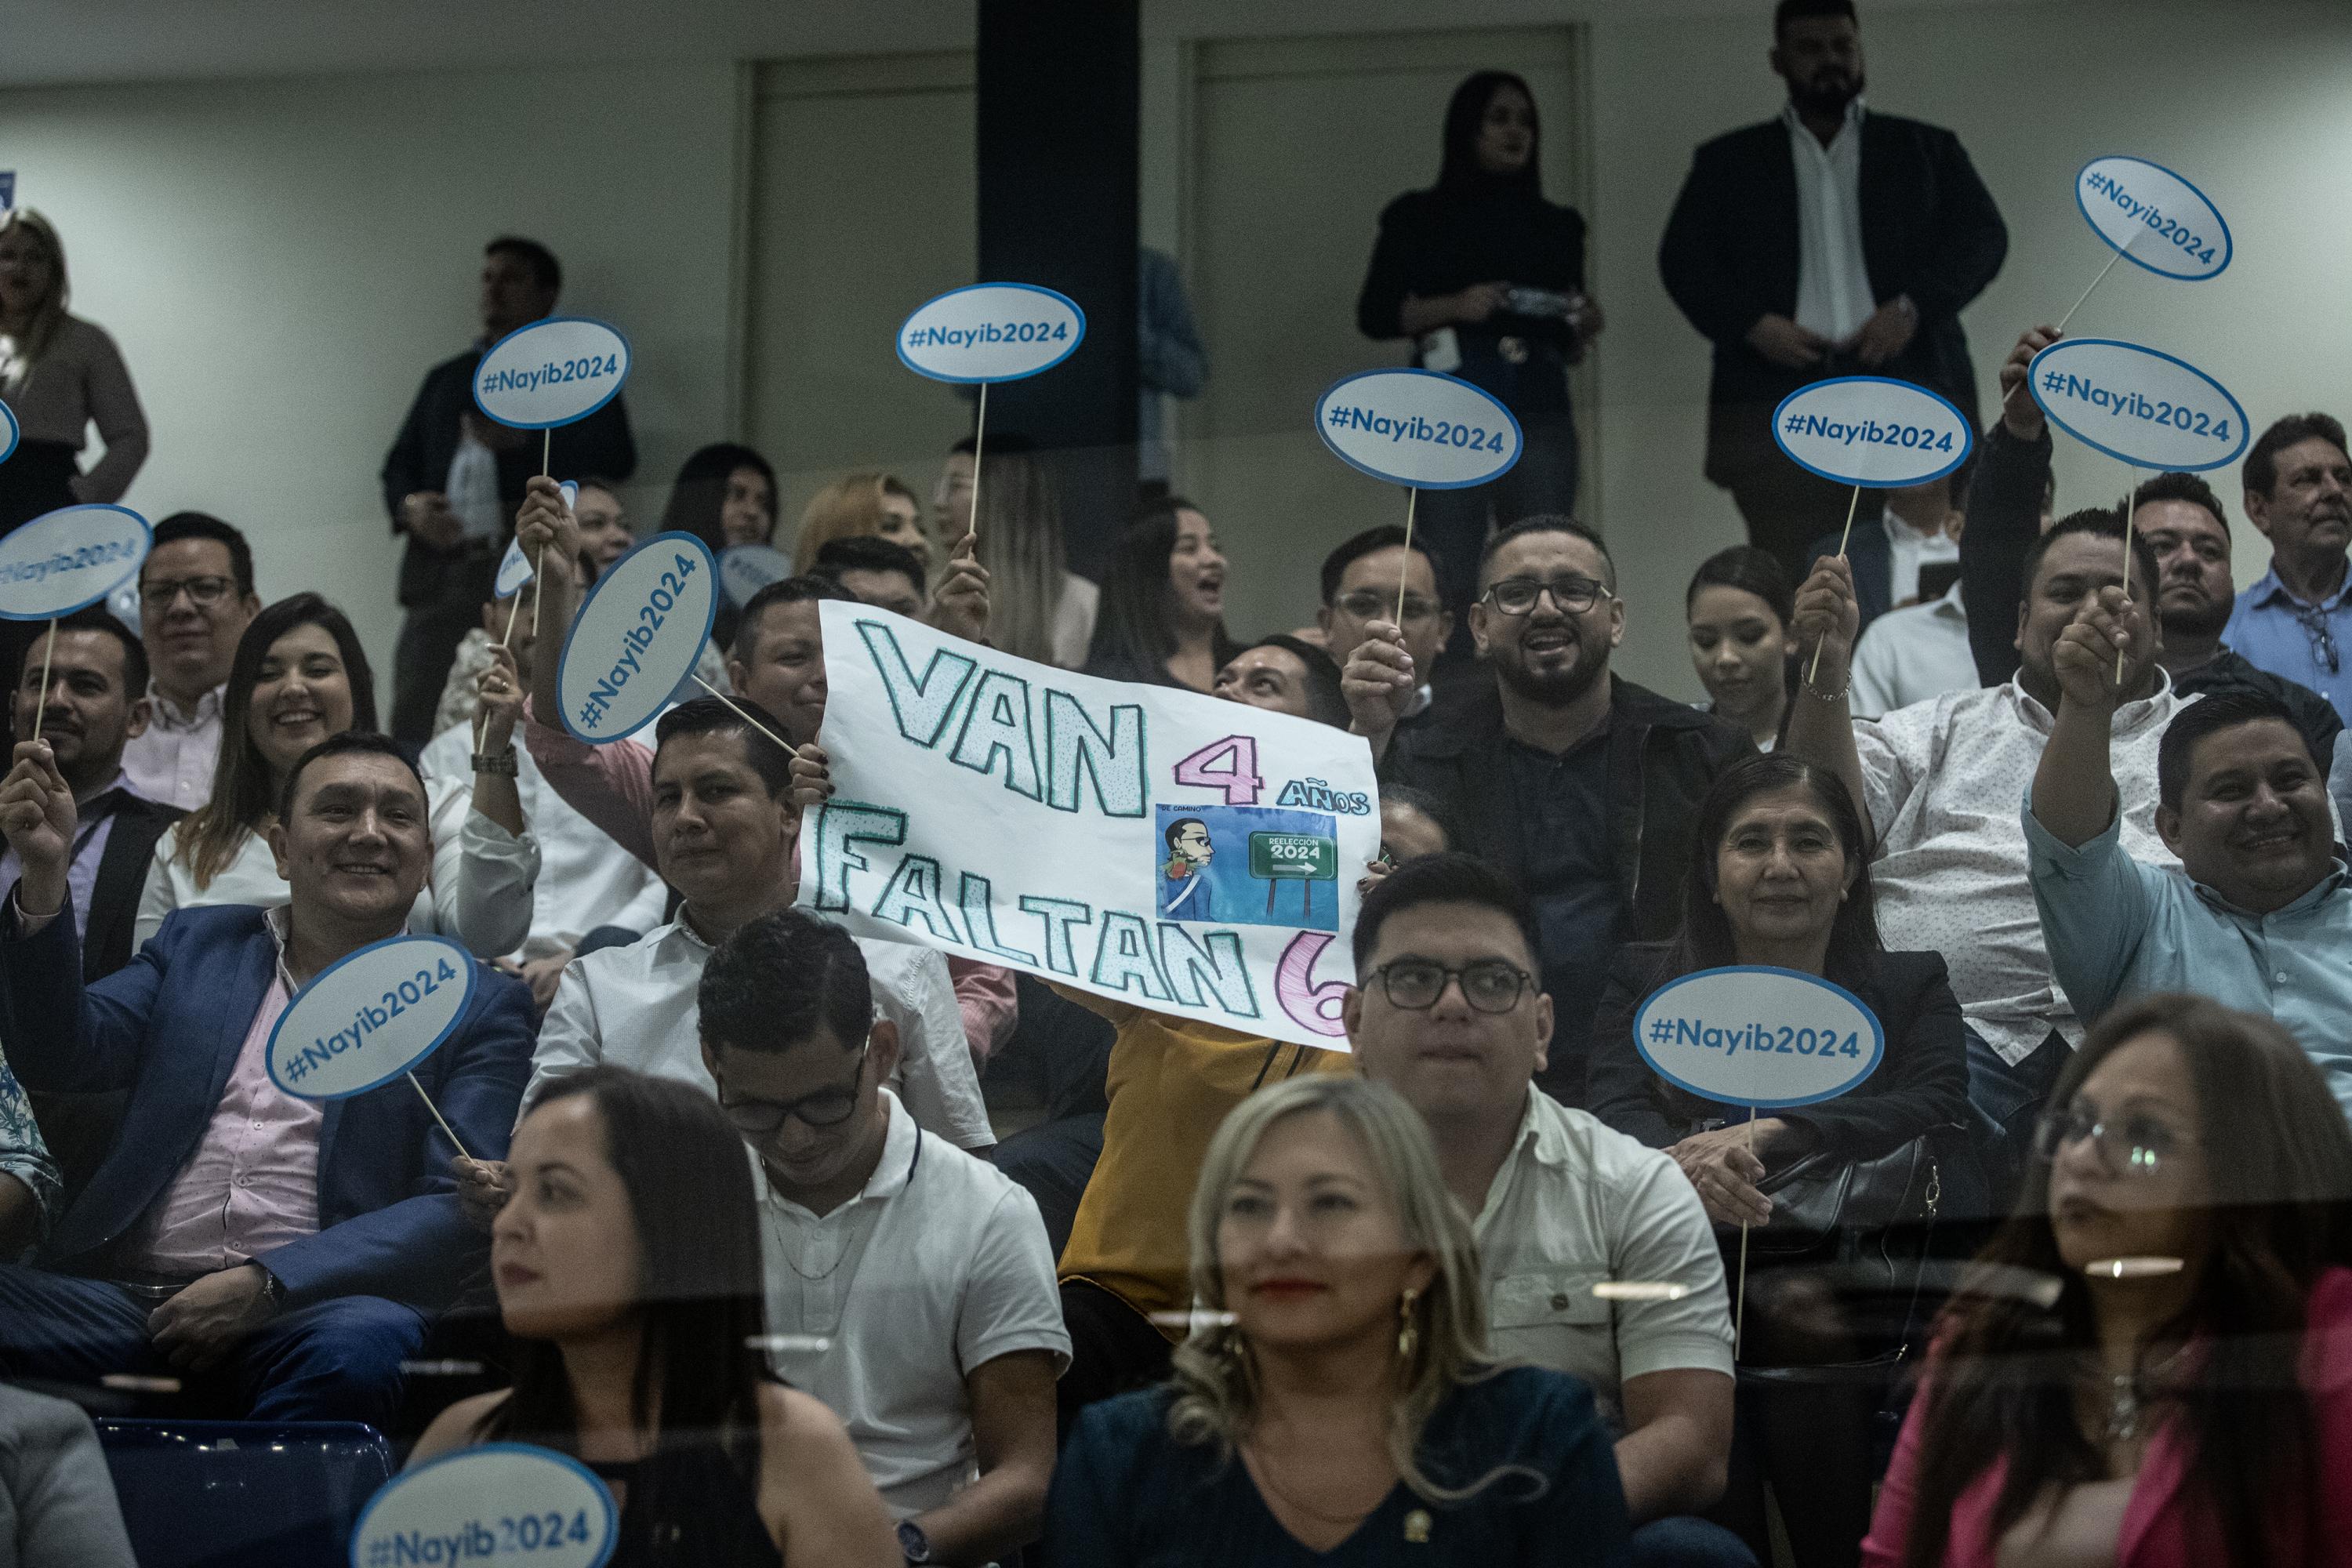 En el área de visitas de la Asamblea, los asistentes se habían organizado con pancartas y rótulos para apoyar la candidatura de reelección de Nayib Bukele en las elecciones del 2024. Foto de El Faro: Carlos Barrera